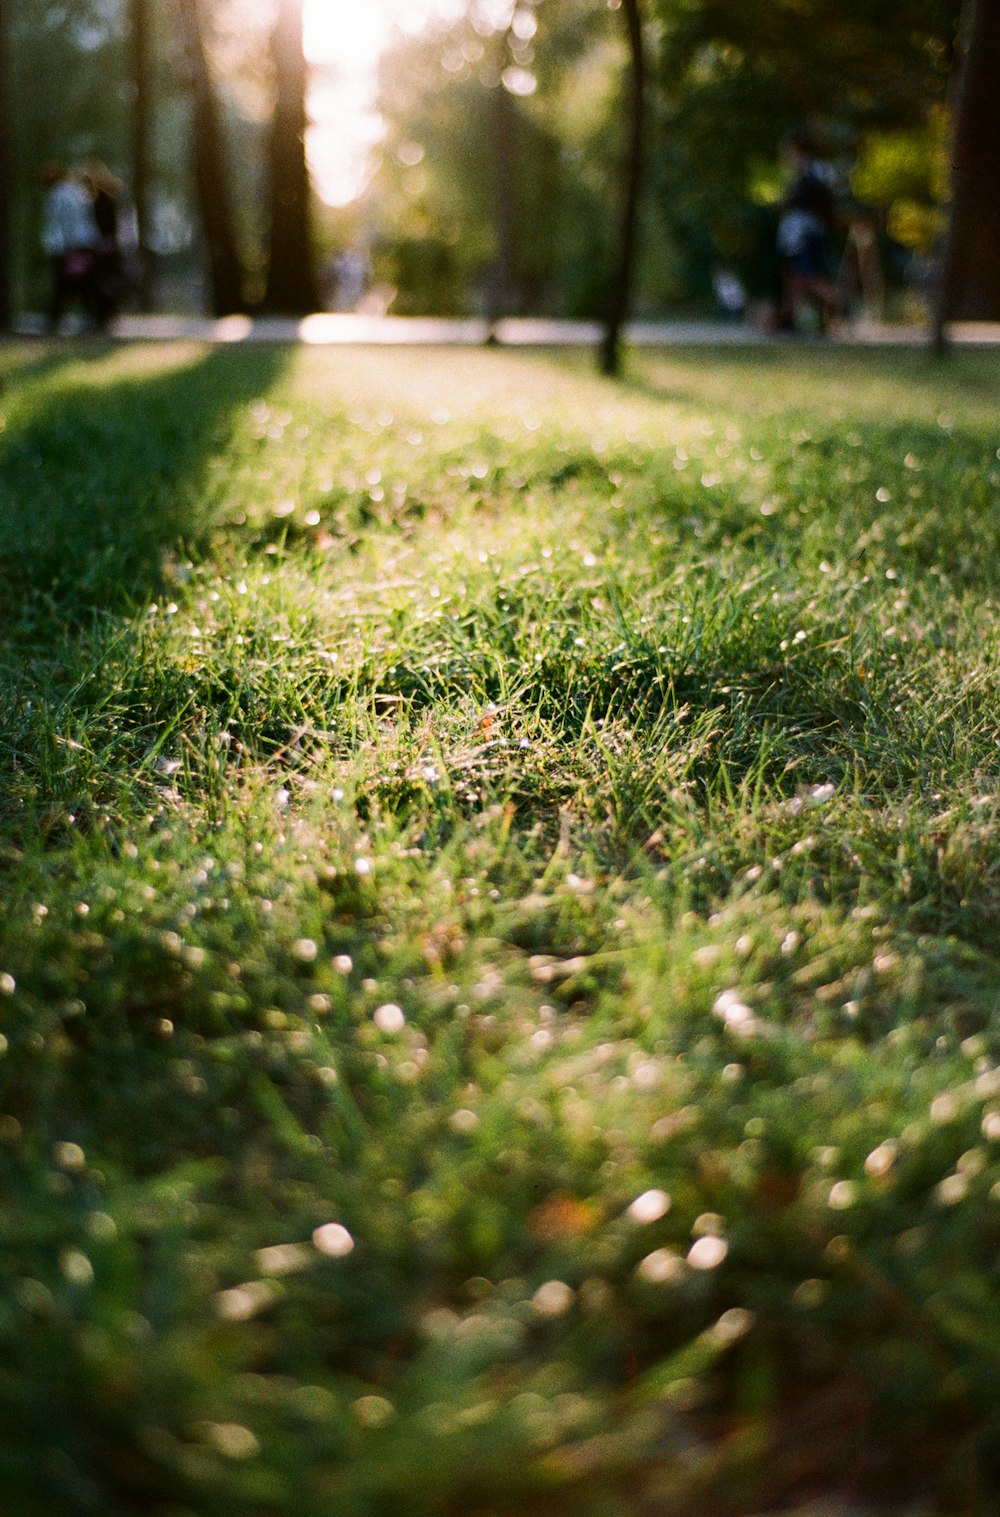 Với những bông cỏ xanh mượt mà được dàn trải đều trên một bãi cỏ, hình ảnh này sẽ đưa bạn đến với những cảnh quan tự nhiên đầy tươi mới. Hãy xem hình để tận hưởng khoảnh khắc yên bình.